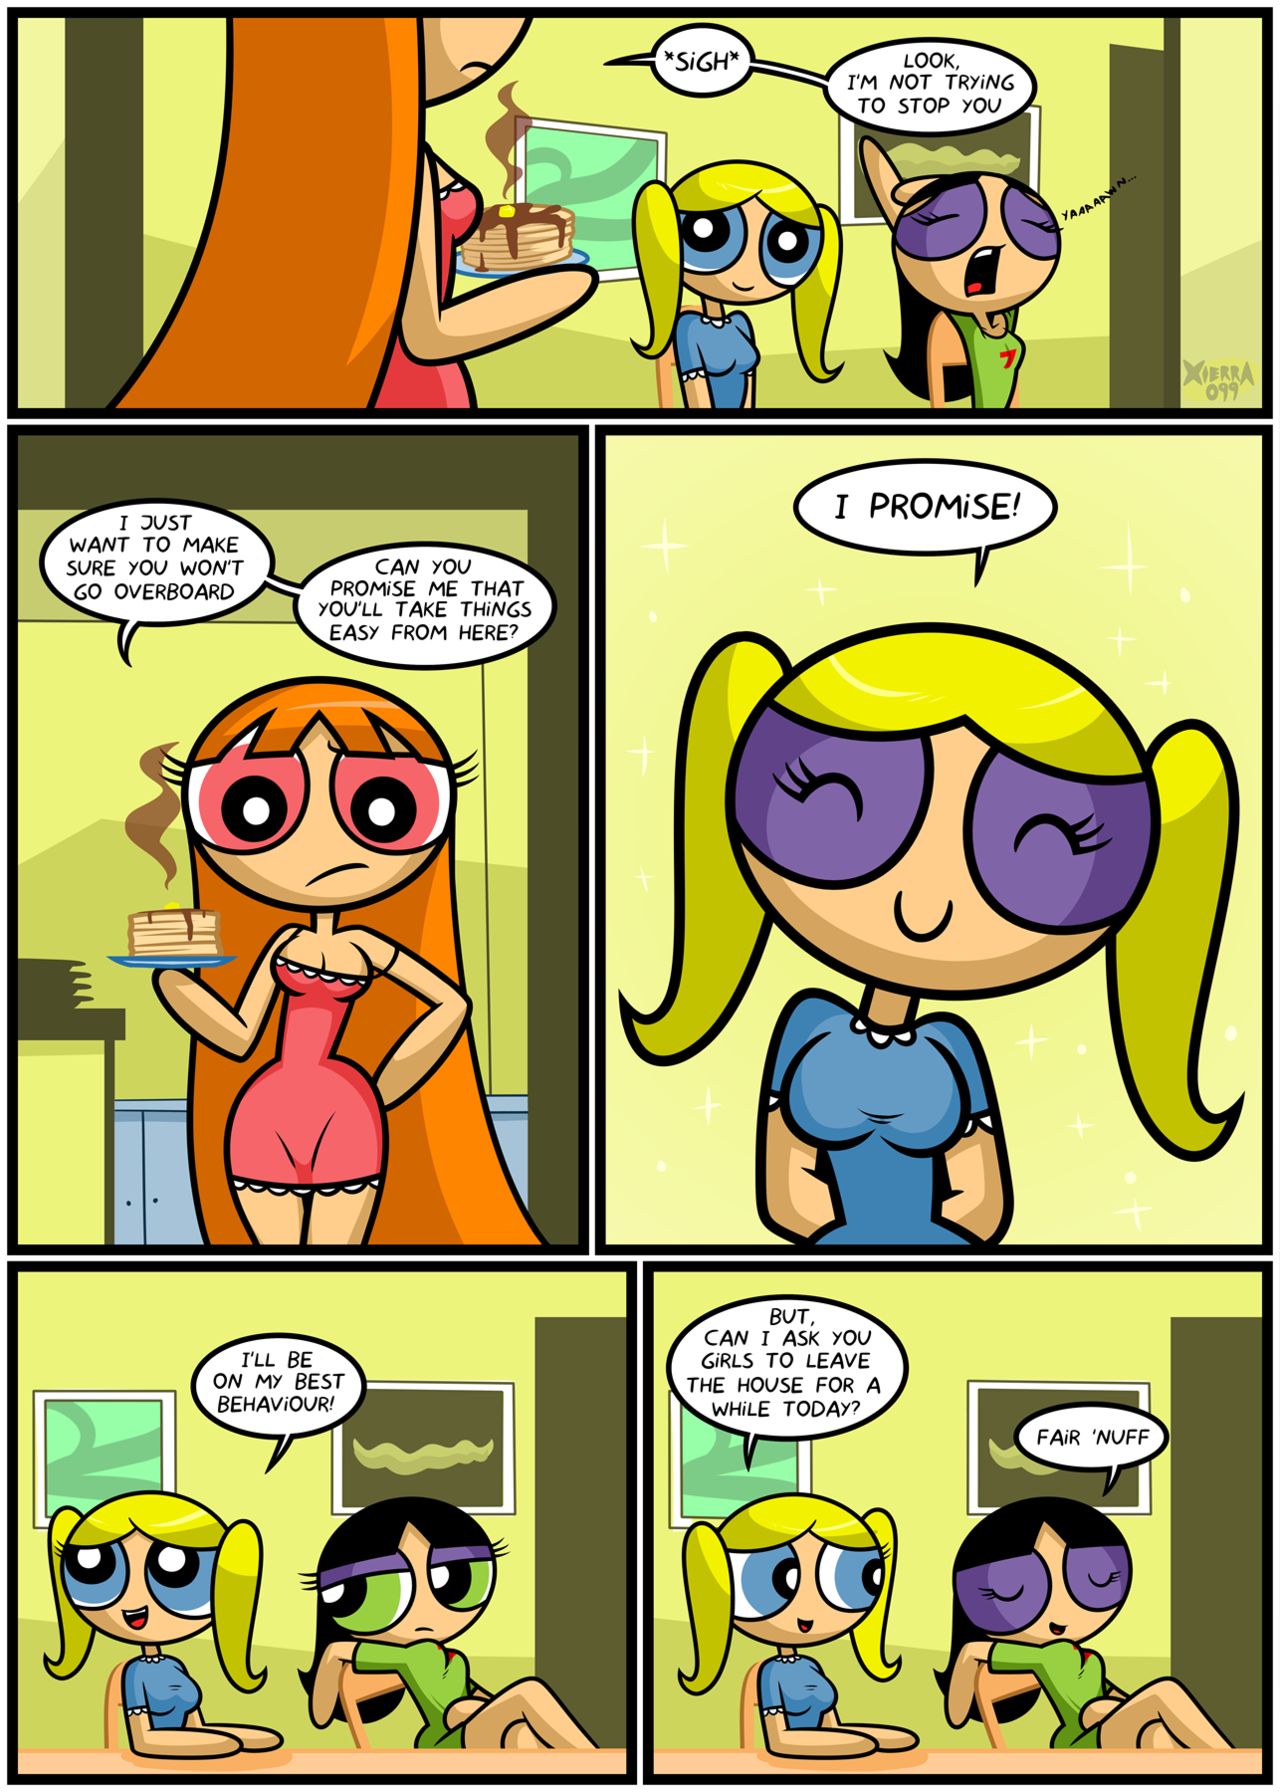 Cartoons Powerpuff Girls Naked - Bubbles' Glee (Powerpuff Girls) by Xierra099 - Porn Comics Galleries